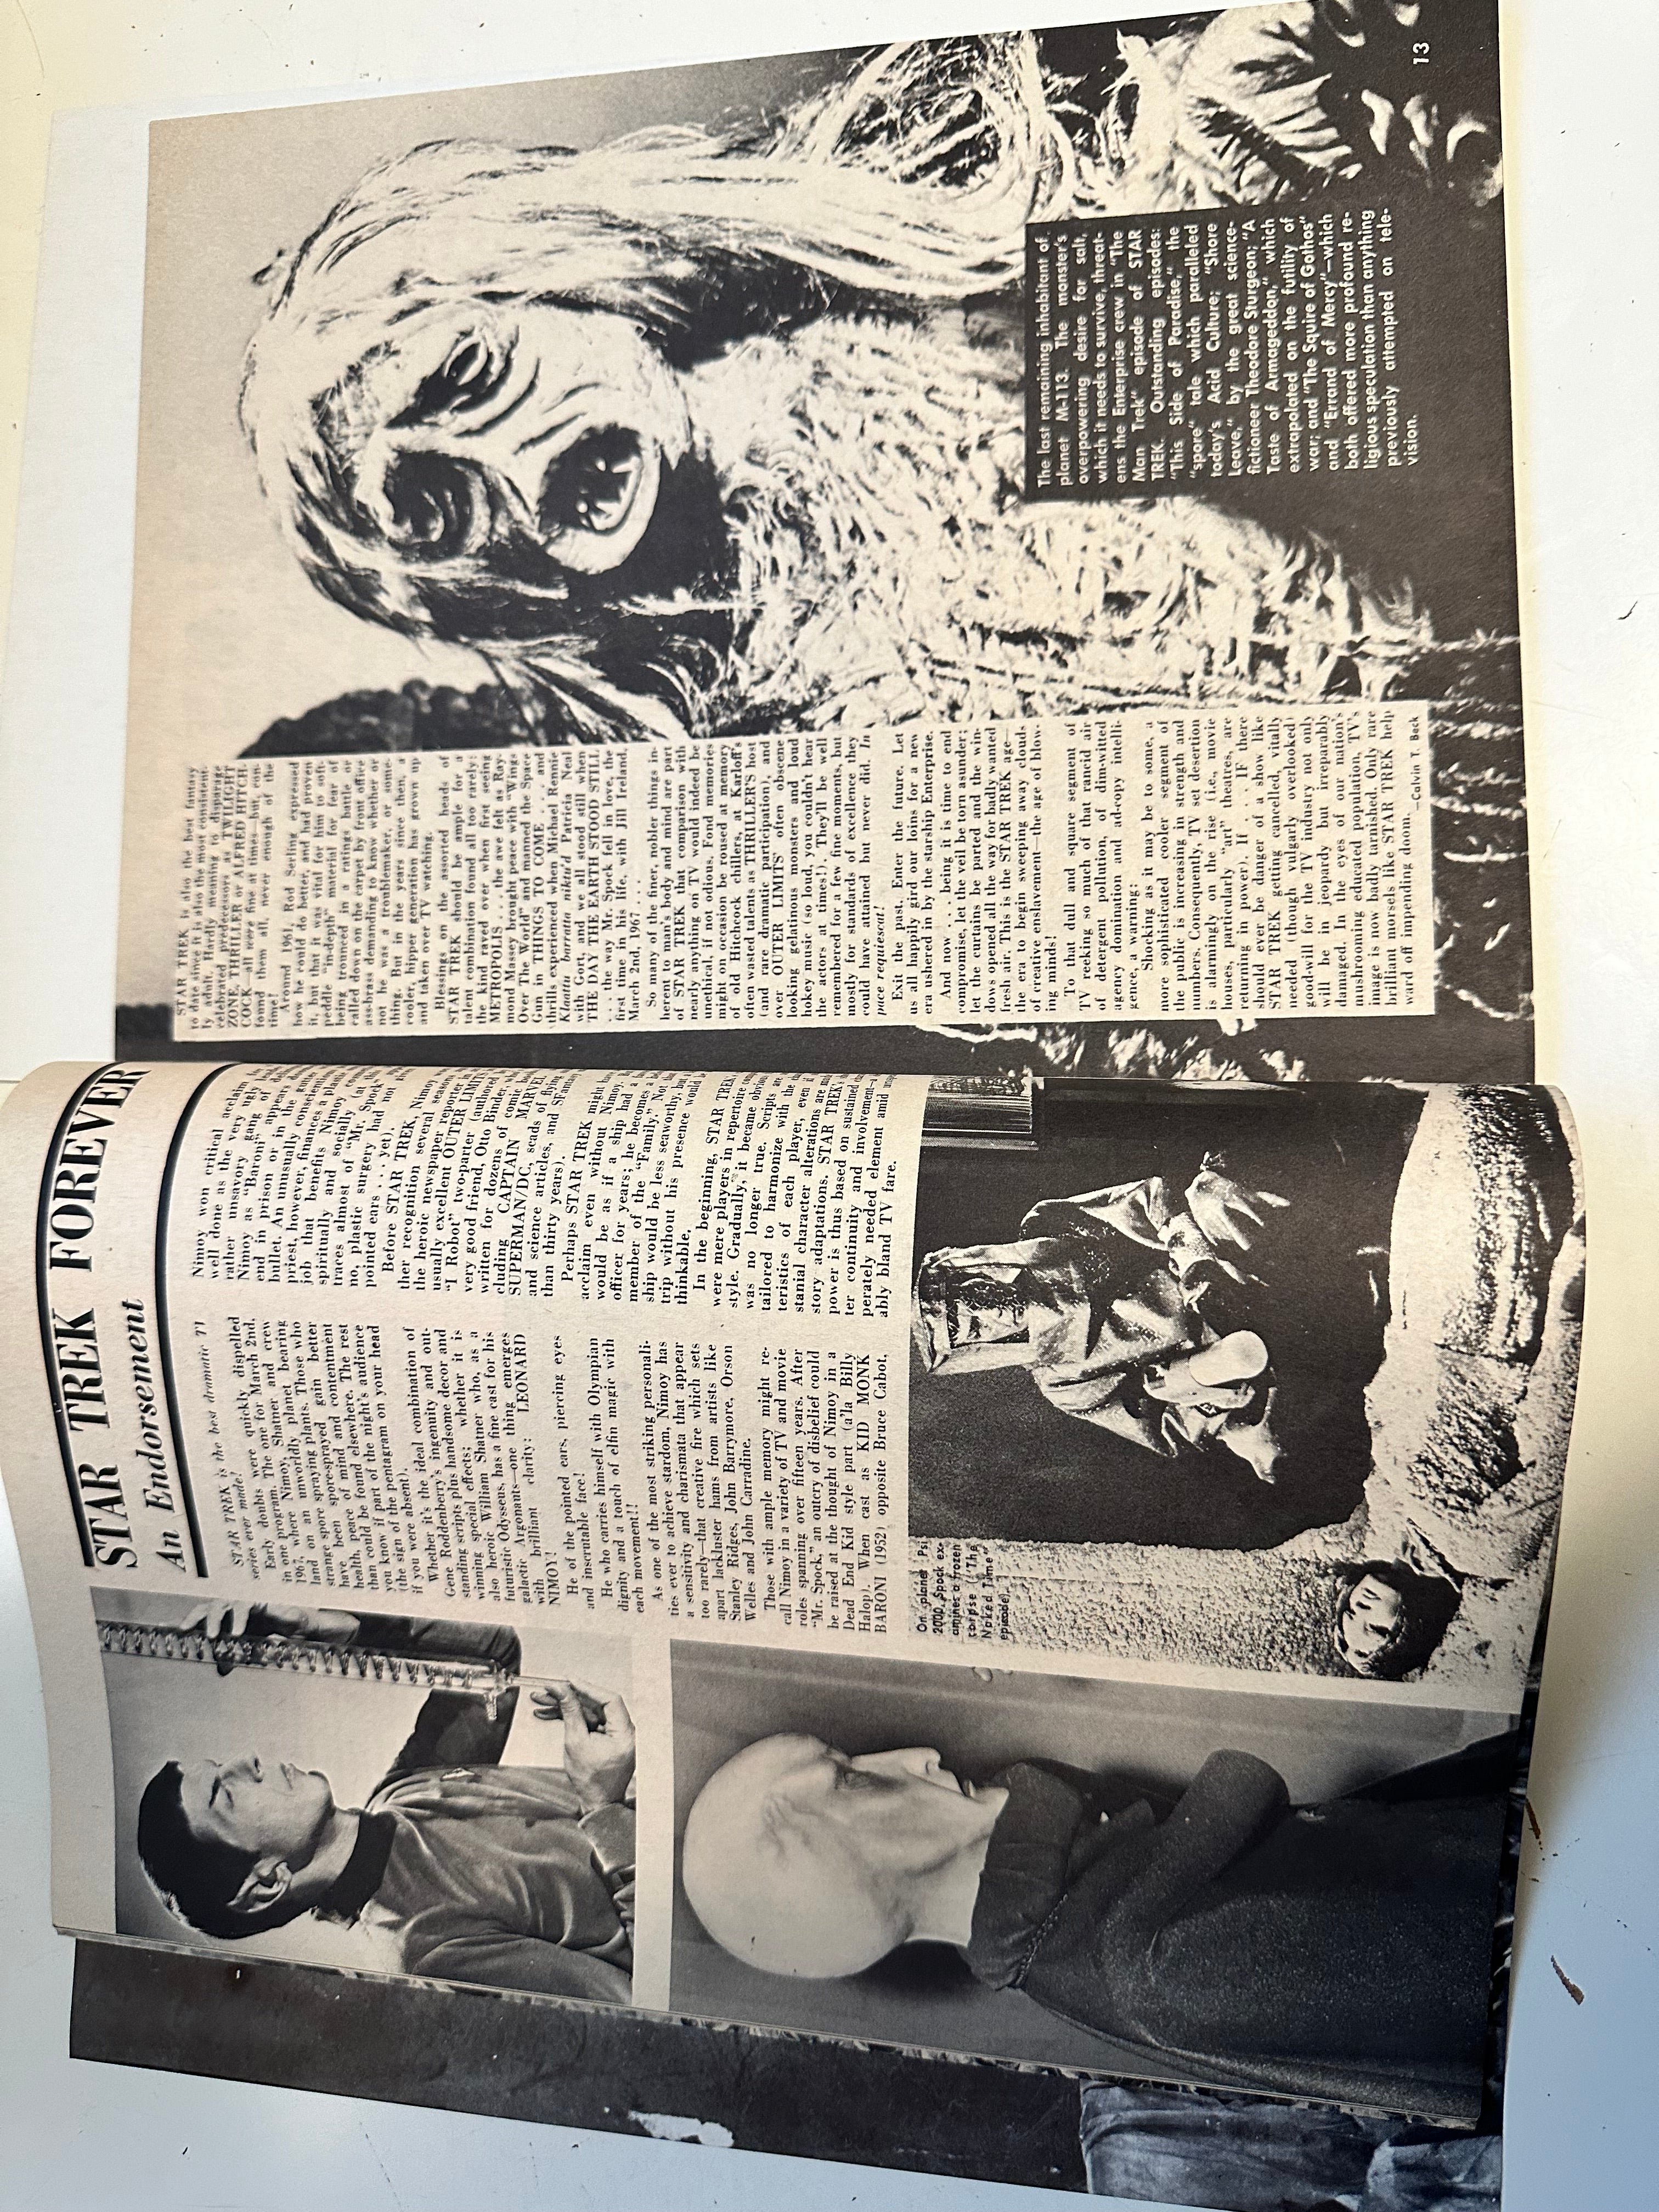 Castle of Frankenstein #11 high grade condition movie/TV magazine 1967